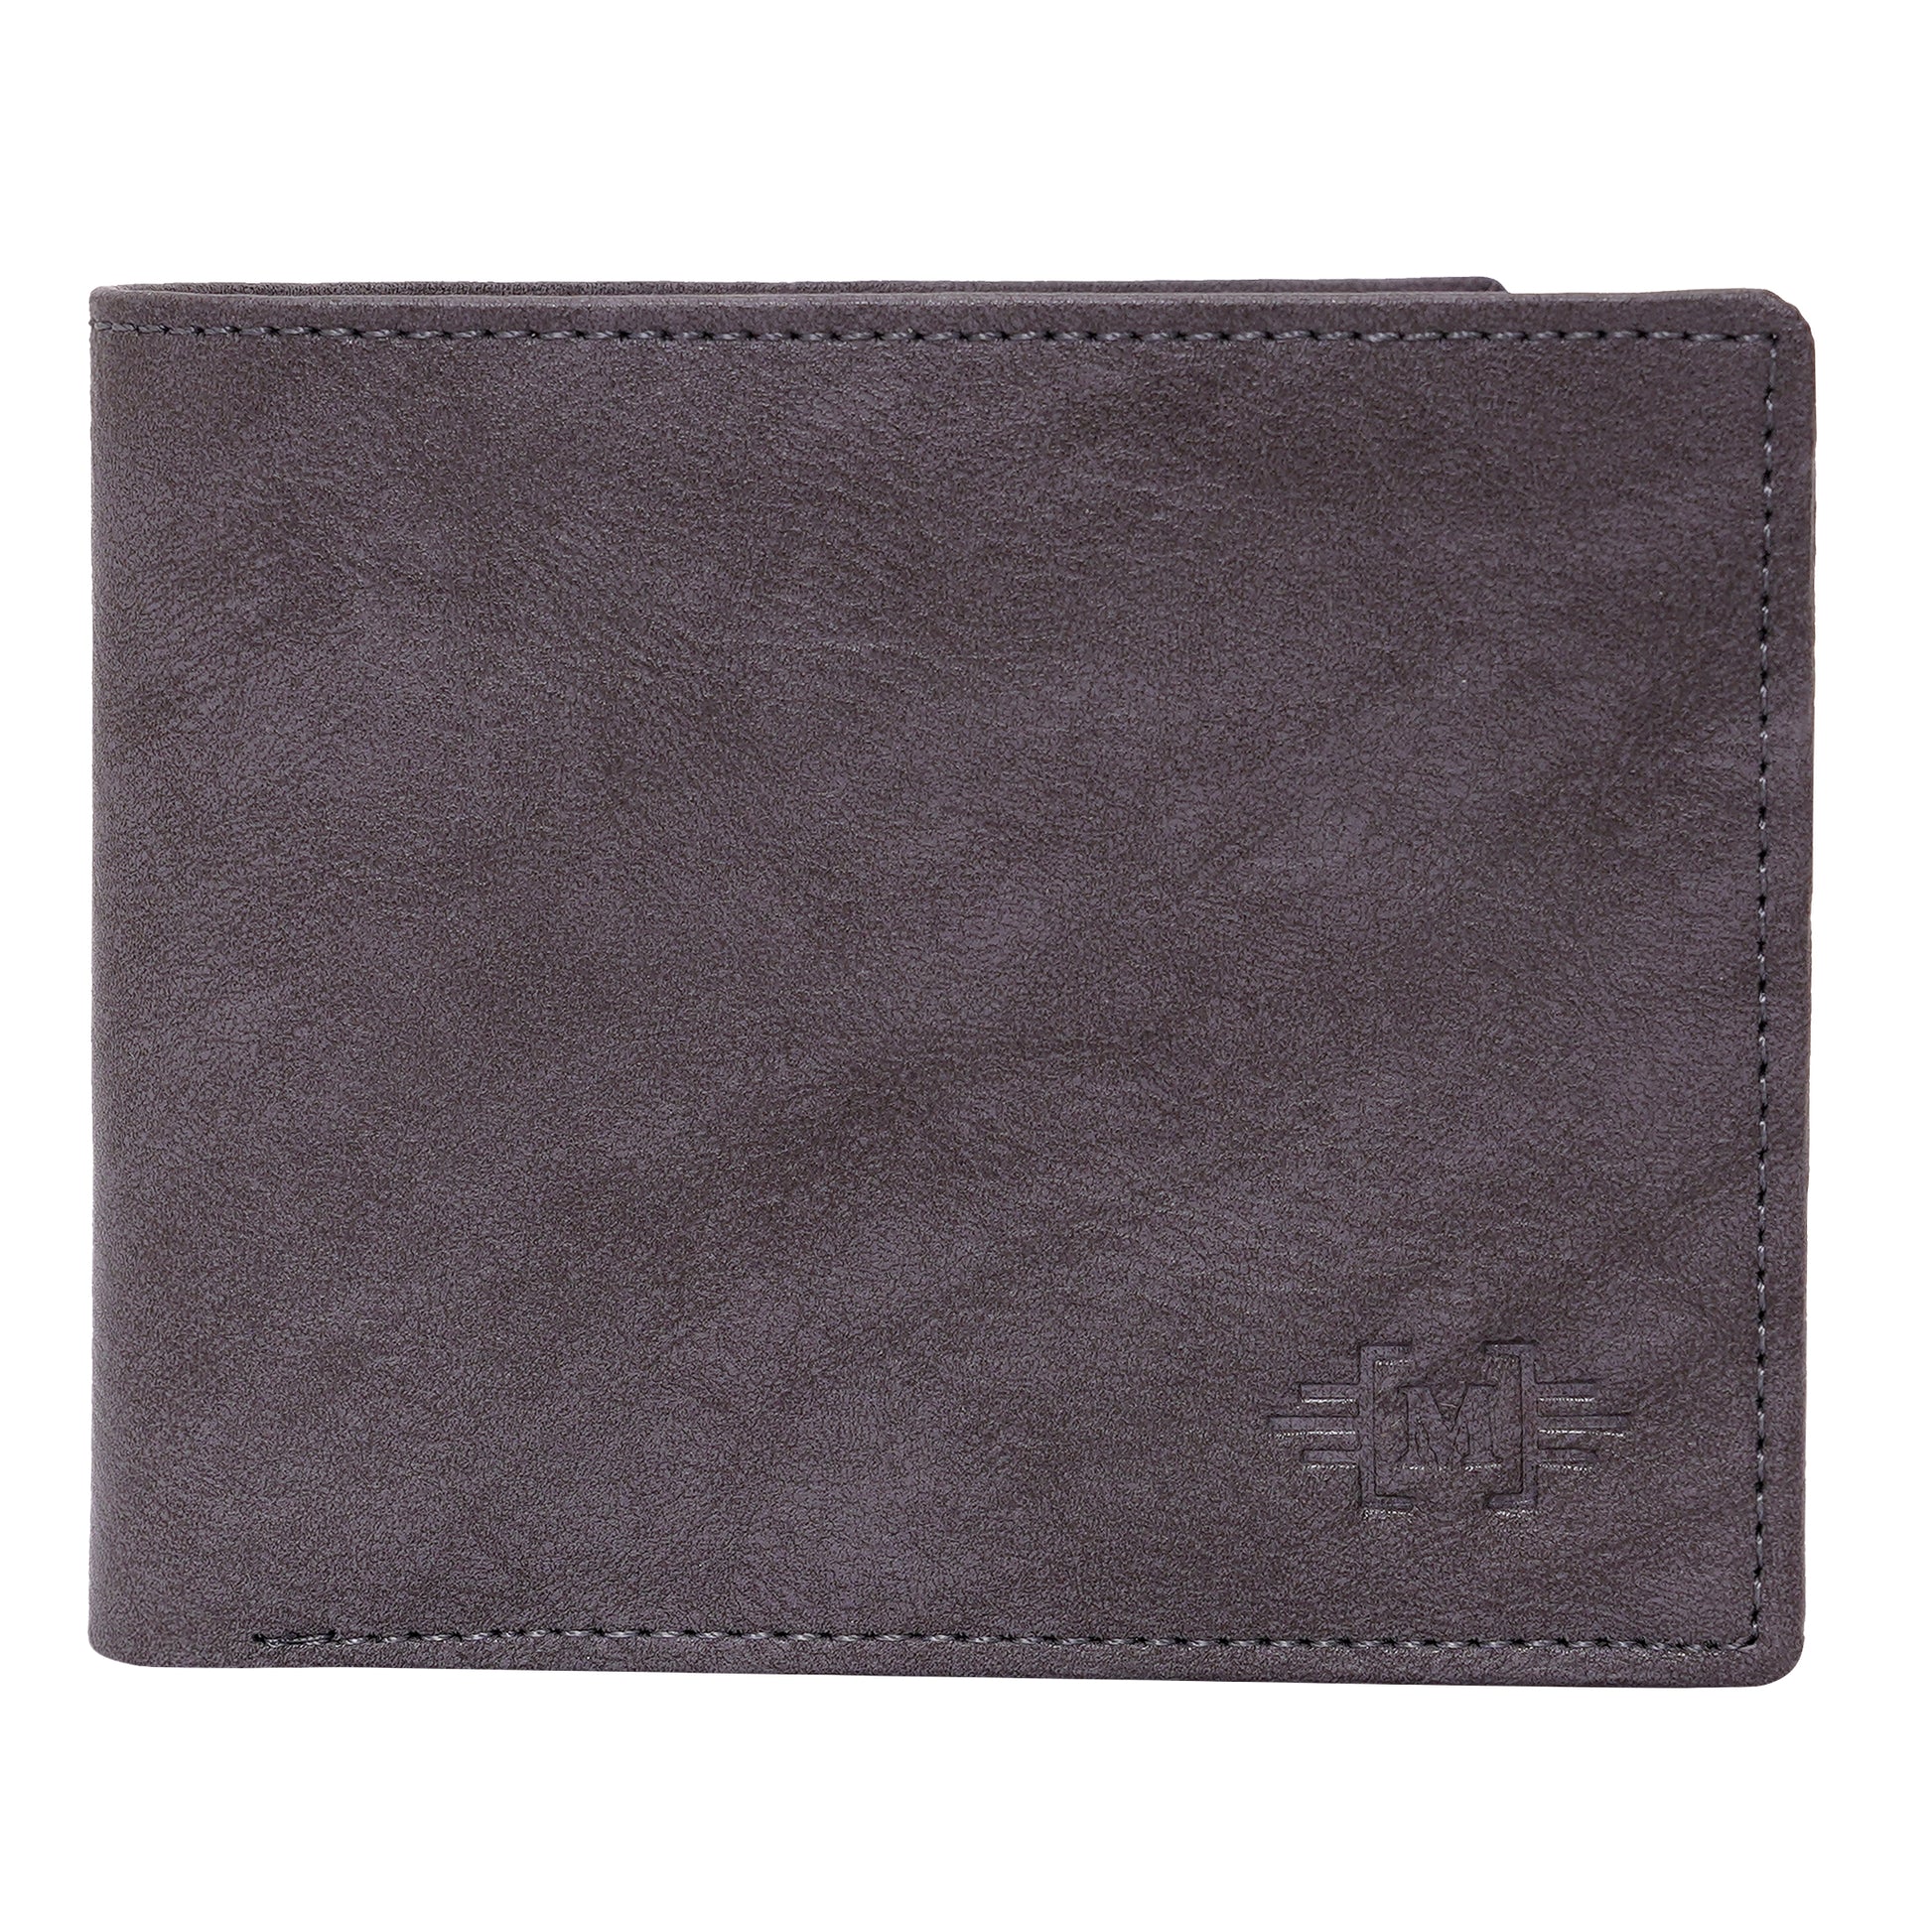 Makas men's wallet , front look plain ,color - Tan